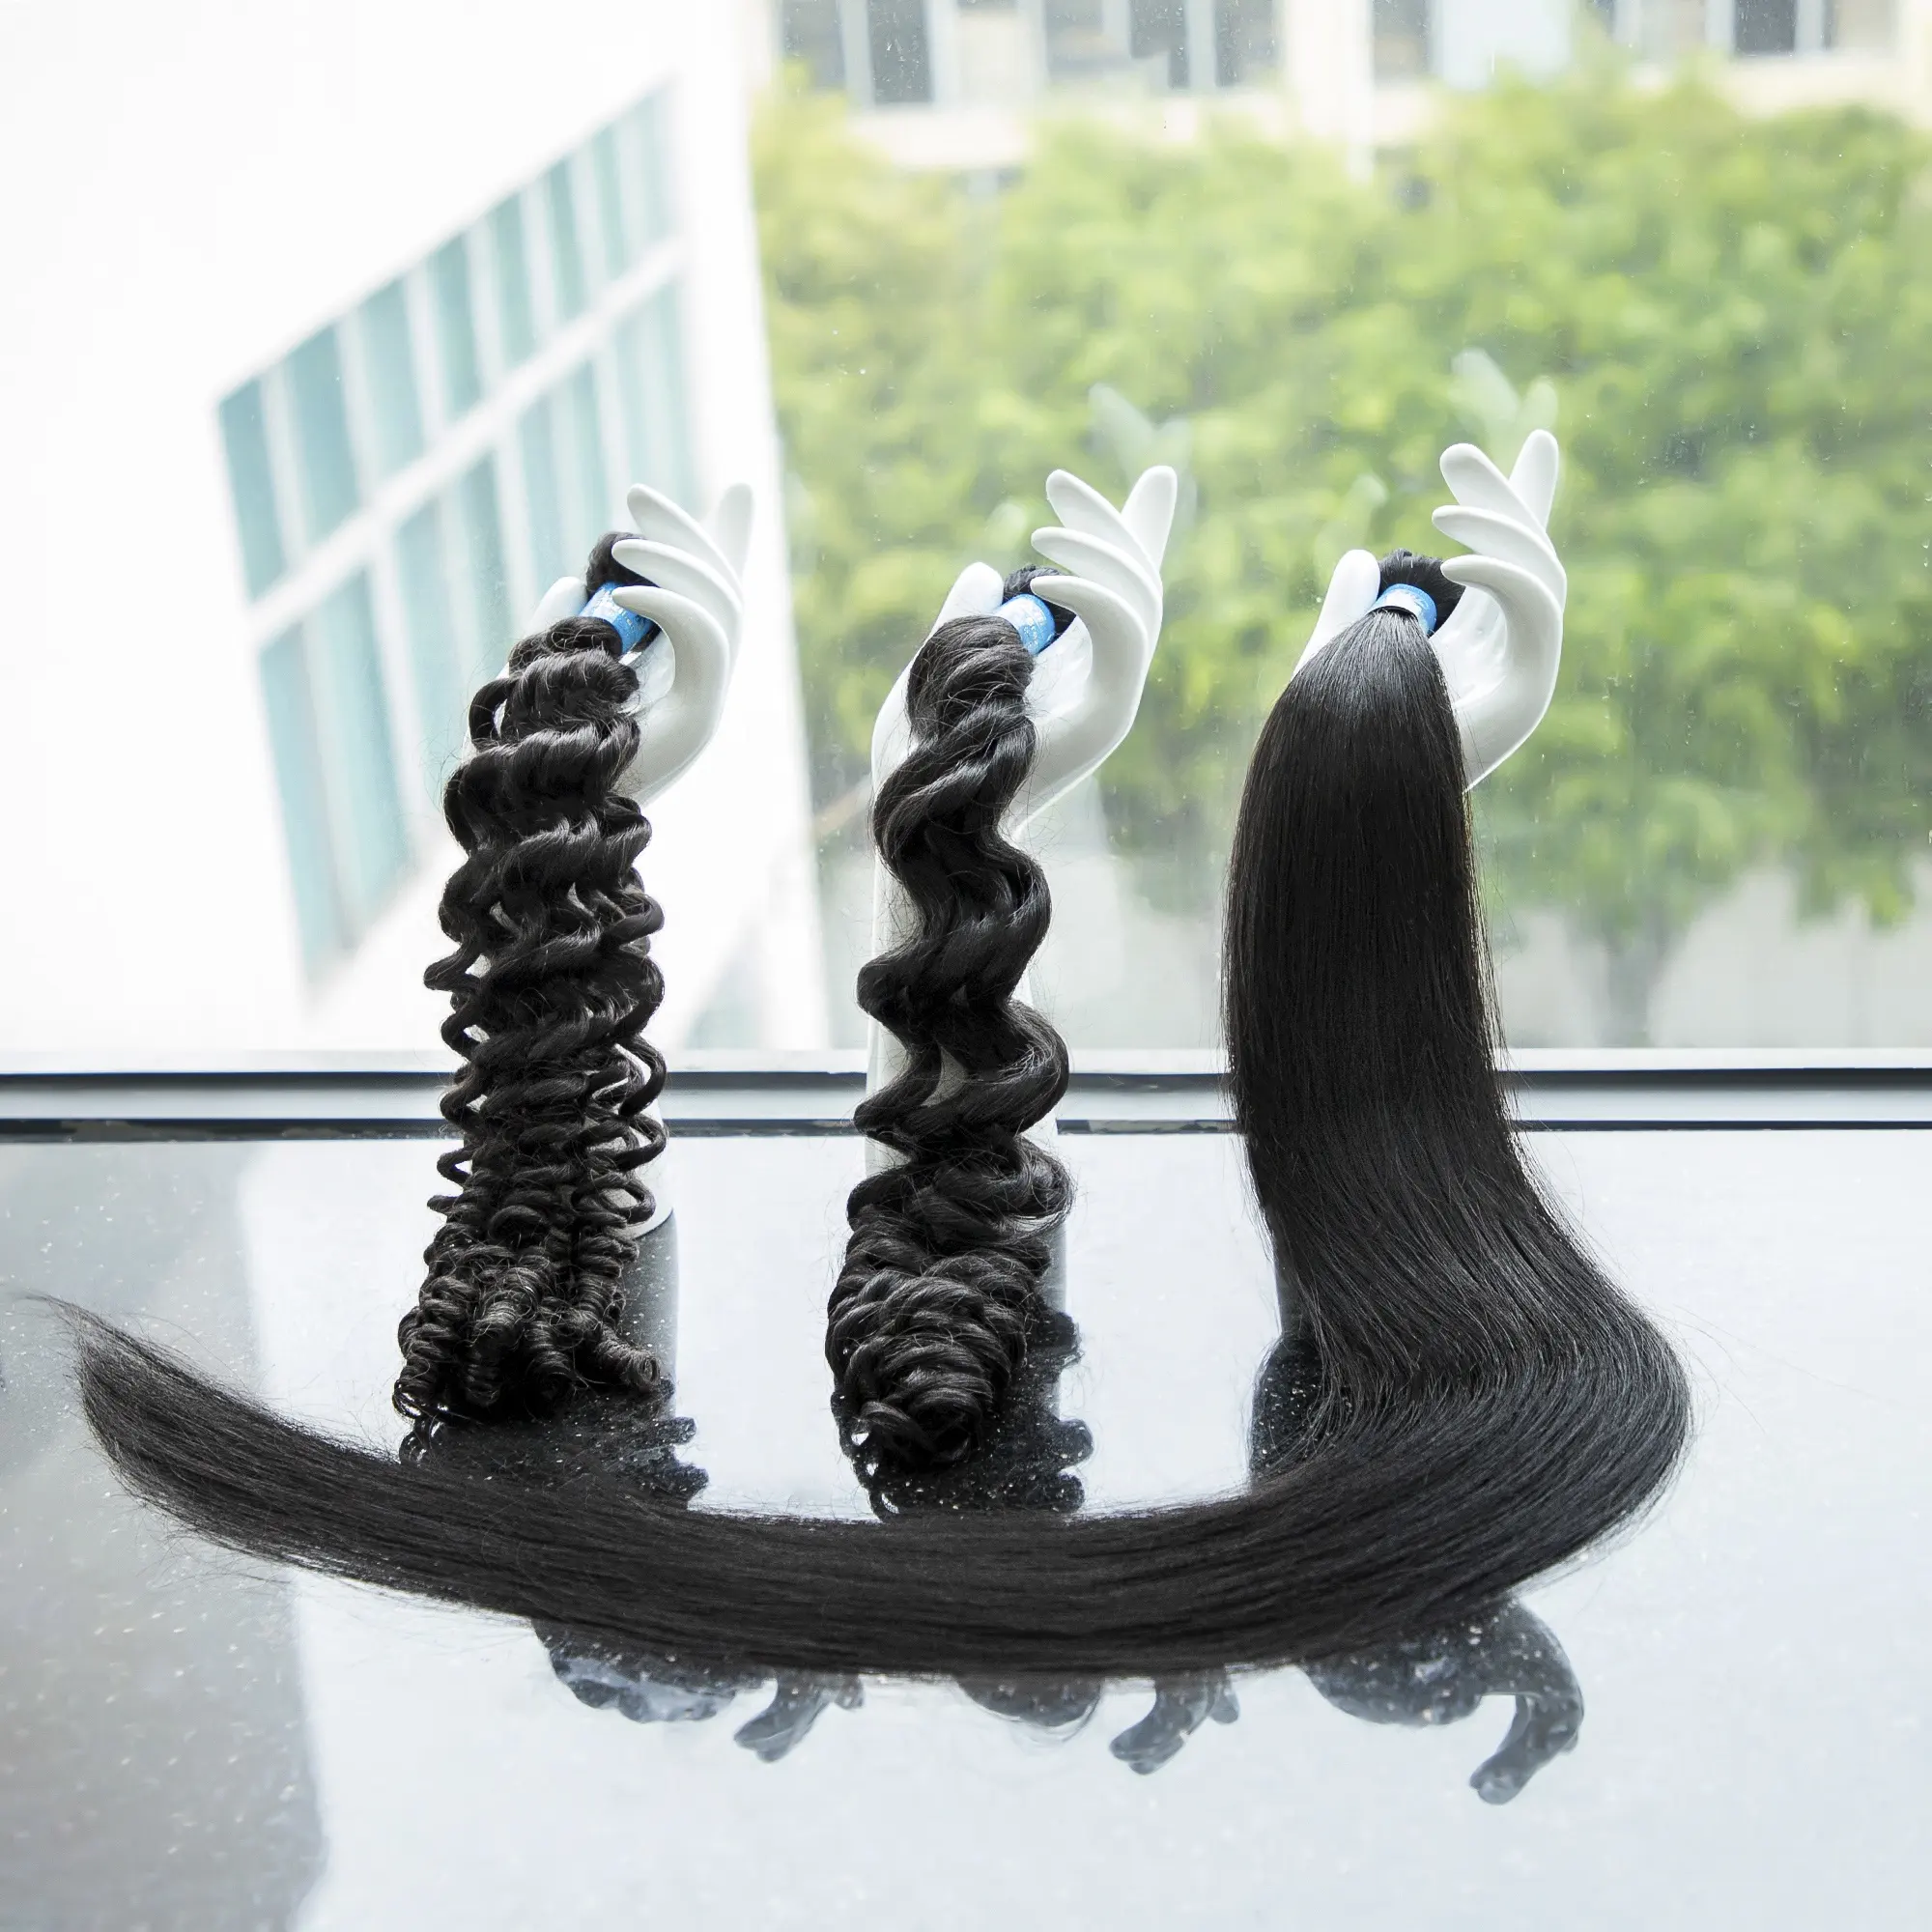 Kbl Neuankömmling brasilia nisches/cabelos menschliches Haar, Blumen modell haar, Bilder von chinesischen Frisuren 100% menschliches Haar Bulks